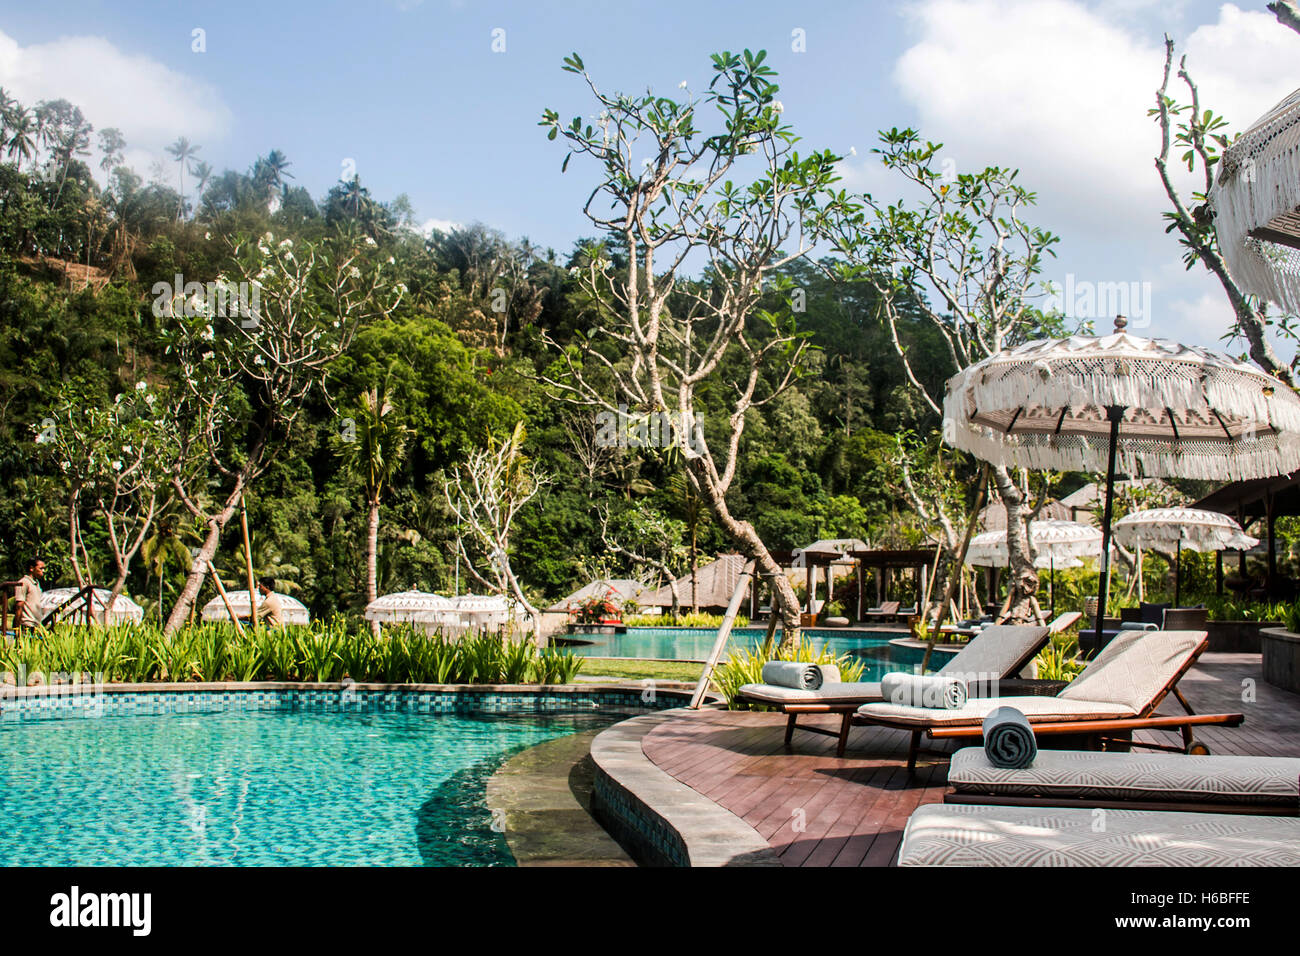 Village piscine dans la jungle d'Ubud à Bali Indonésie Mandapa Banque D'Images